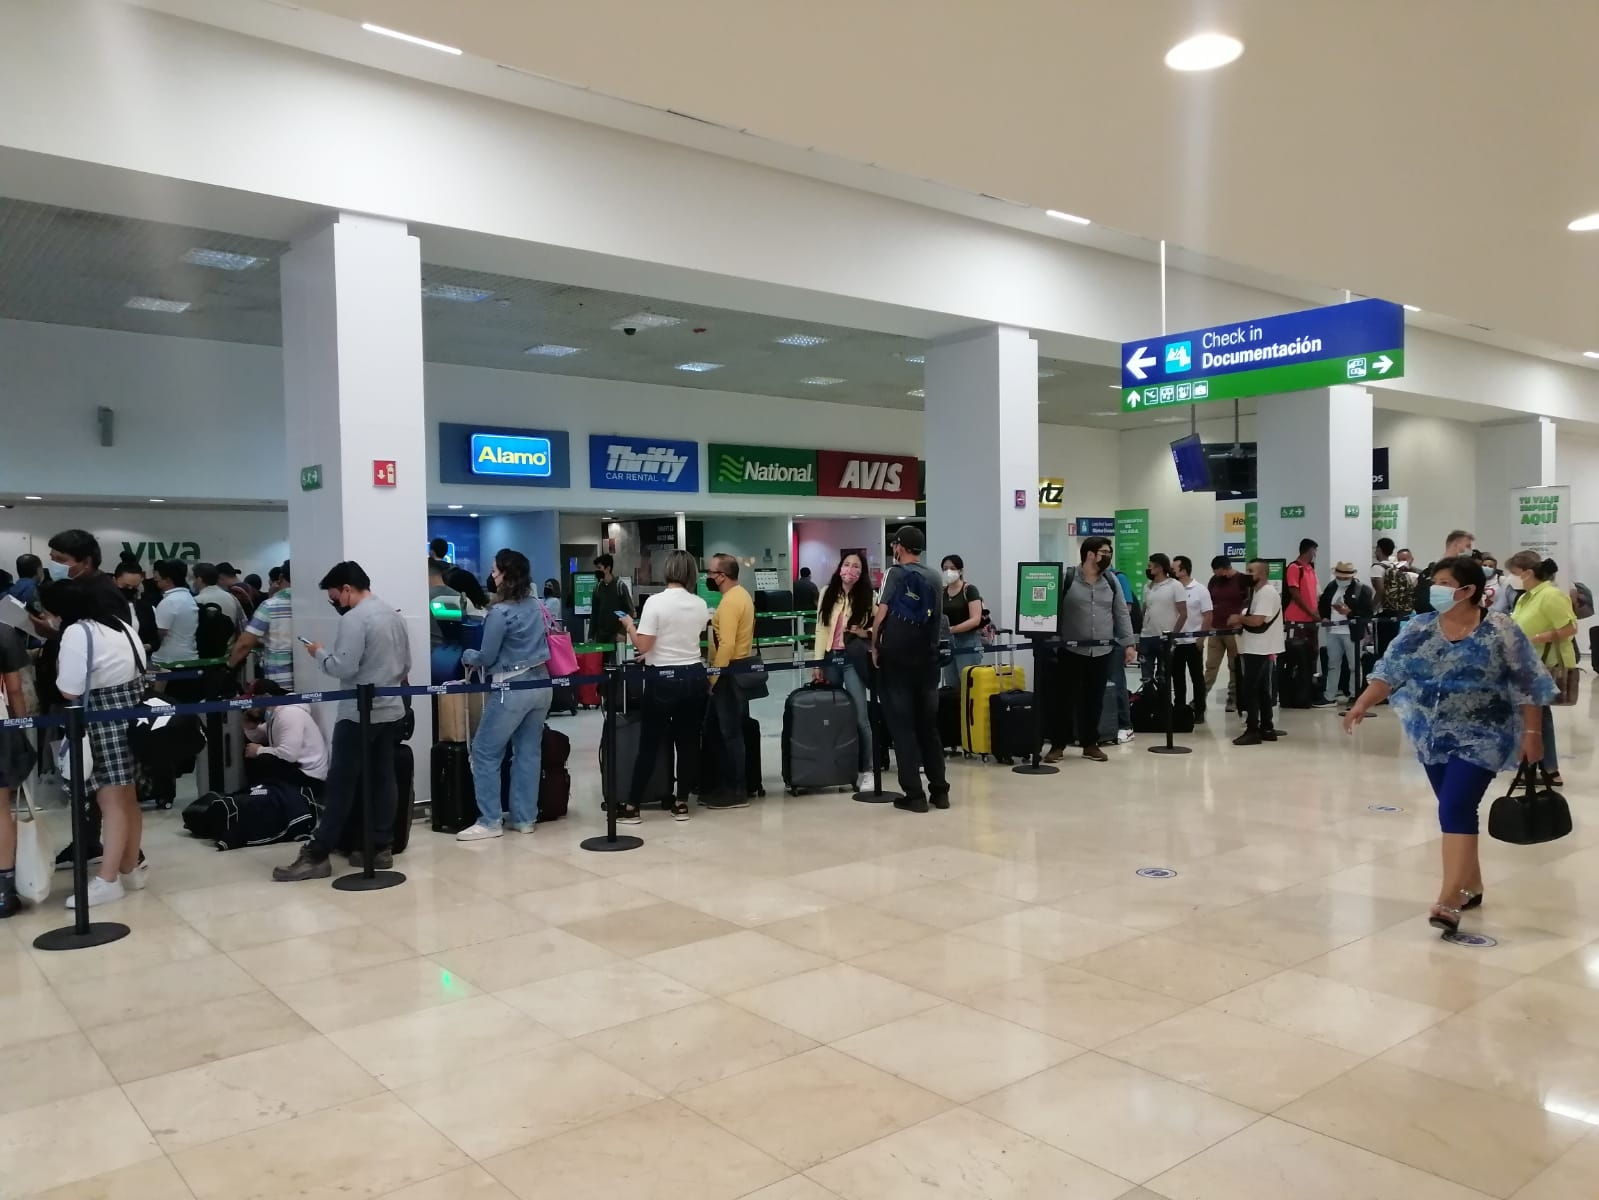 Las conexiones más recurrentes del aeropuerto de Mérida son a la ciudad de CDMX, Monterrey y Guadalajara